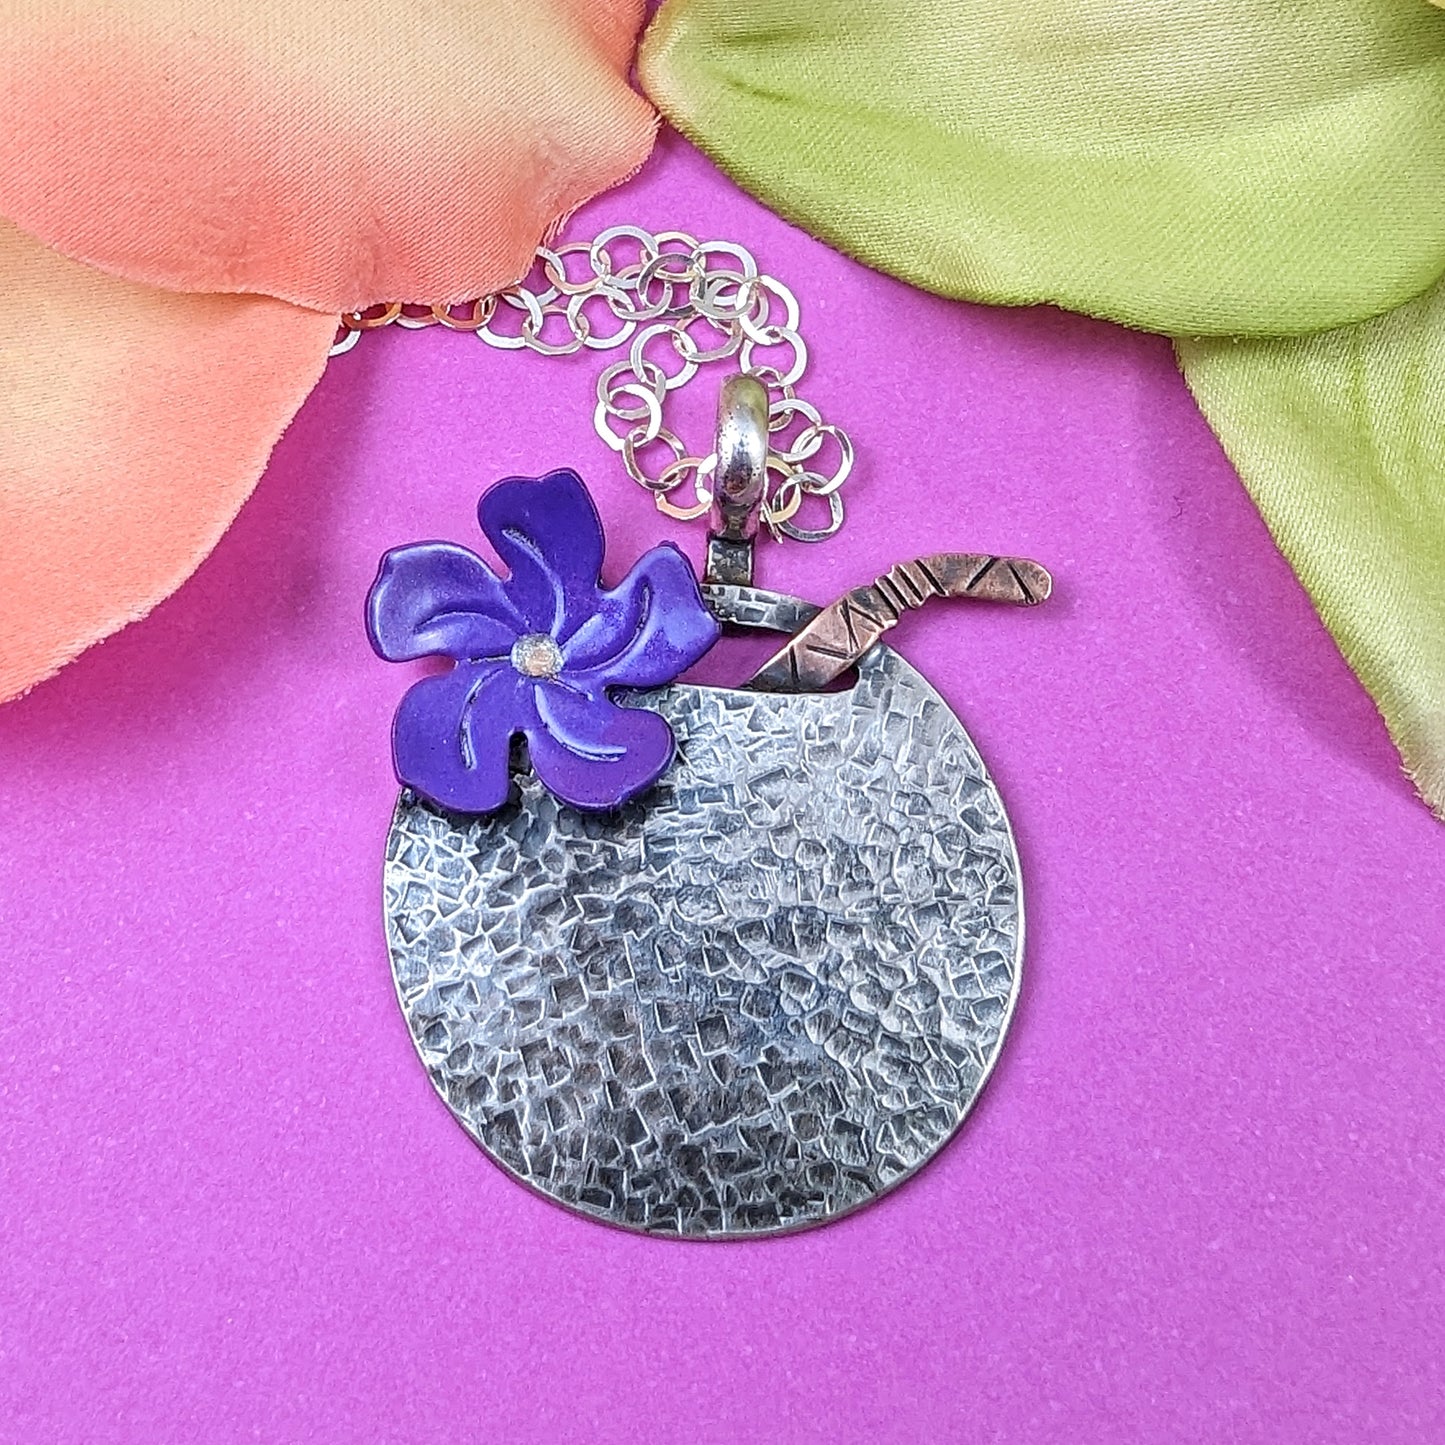 Coconut Drink Necklace - Sterling Silver w/Purple Flower